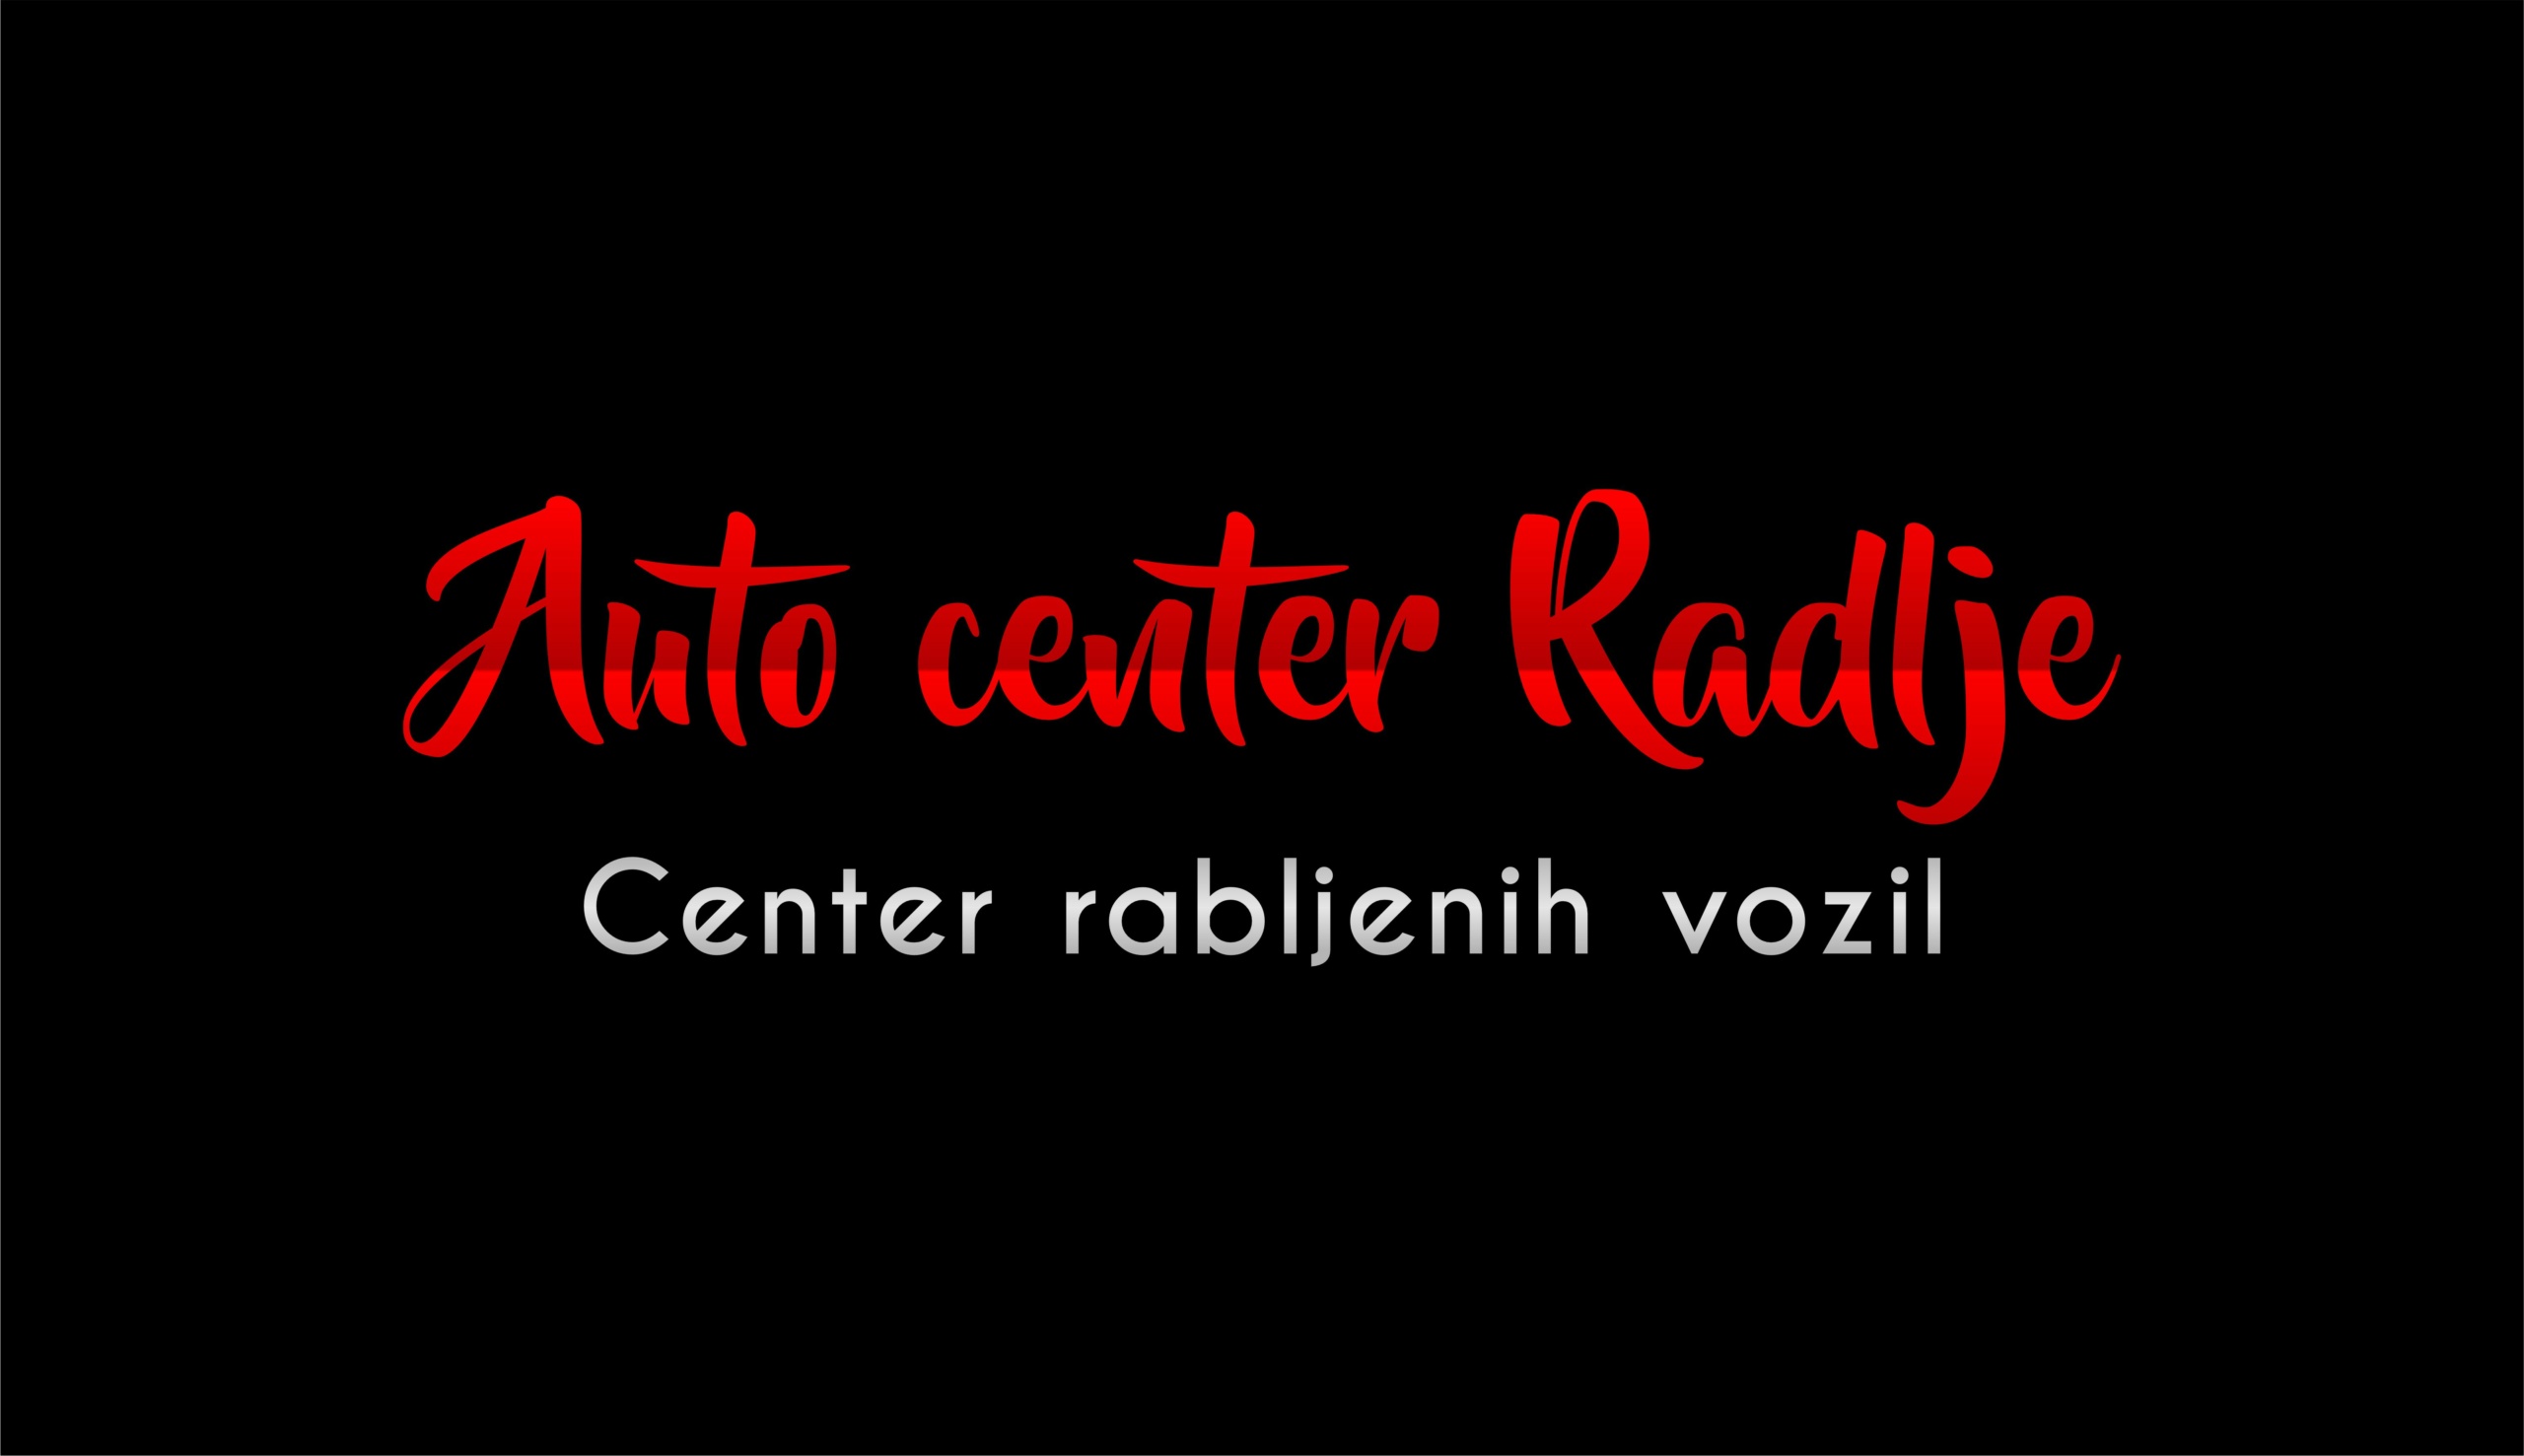 Avto center Radlje logo - Addiko kreditni posredniki